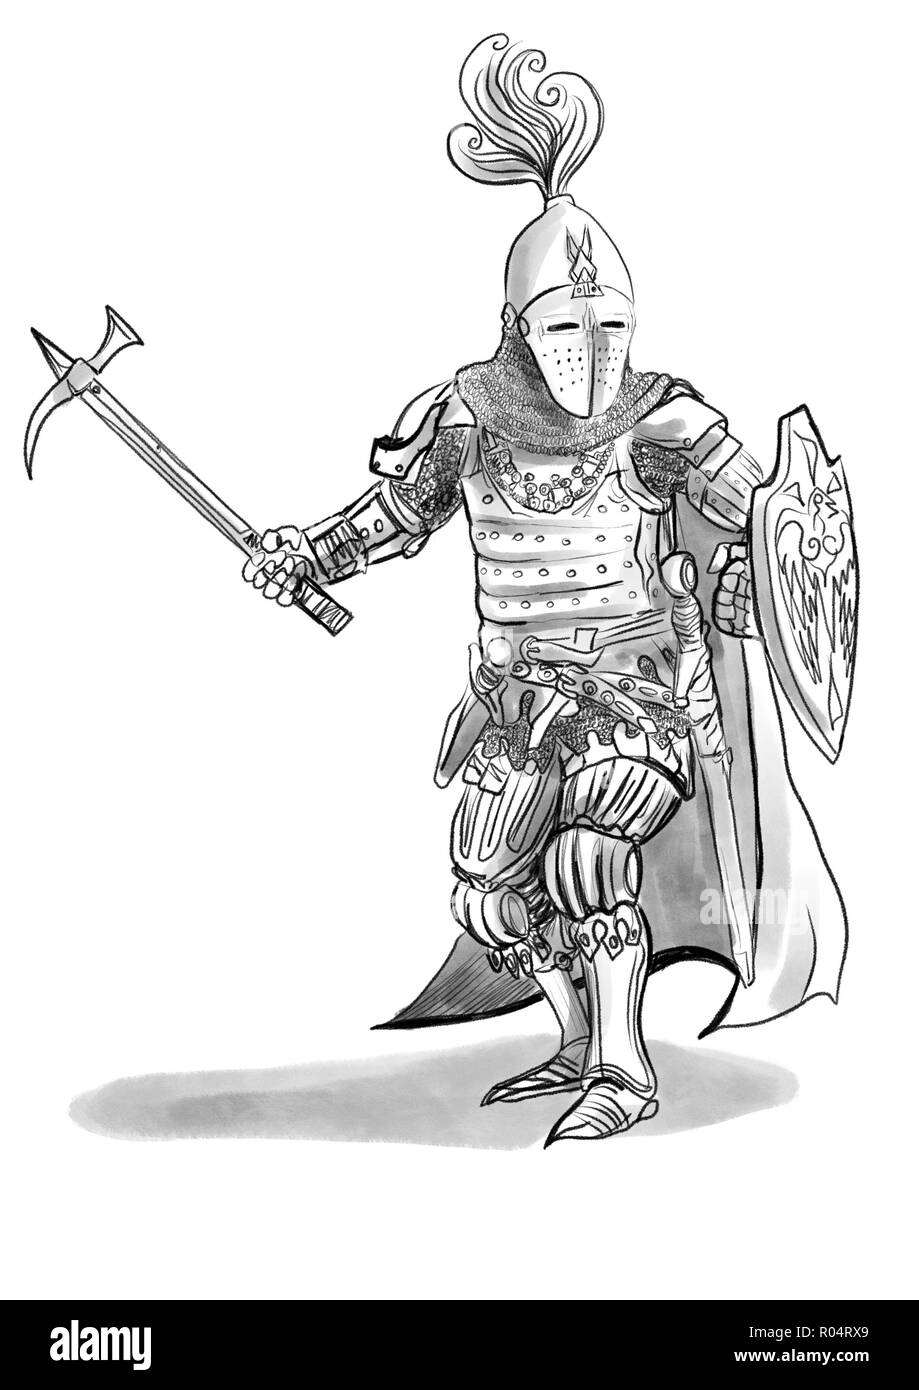 illustration chevalier médiéval Banque D'Images